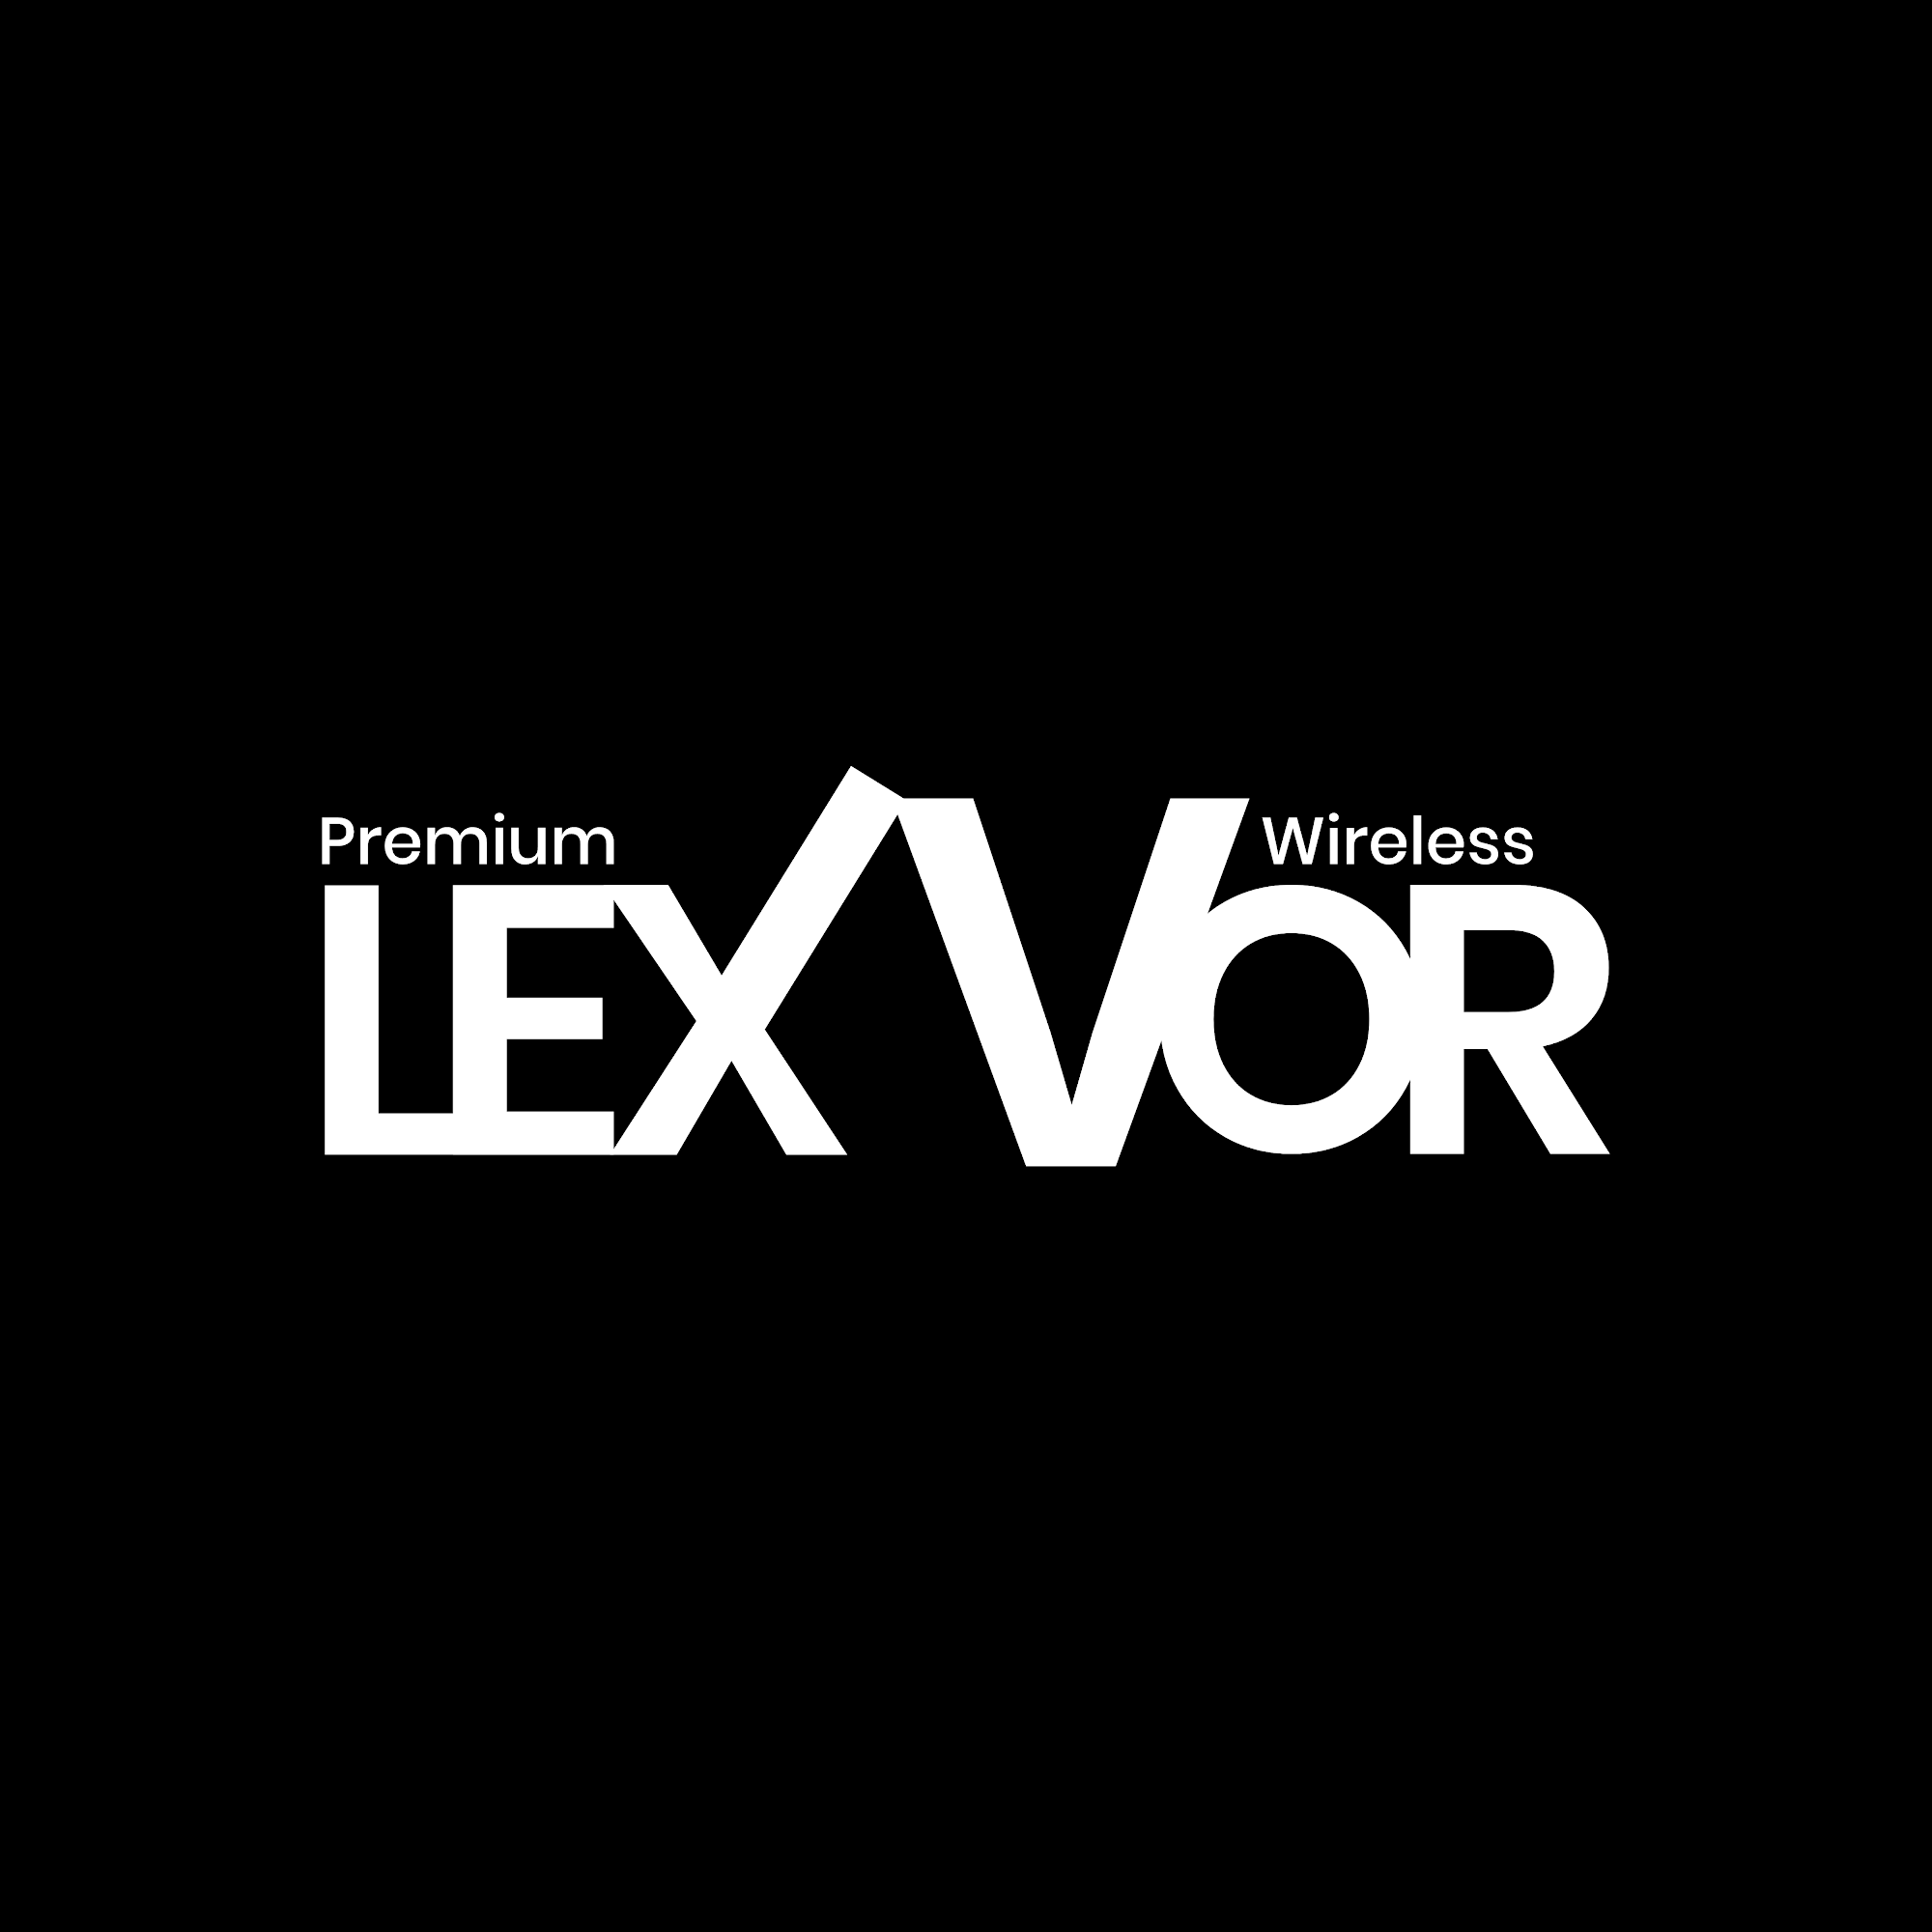 Lexvor